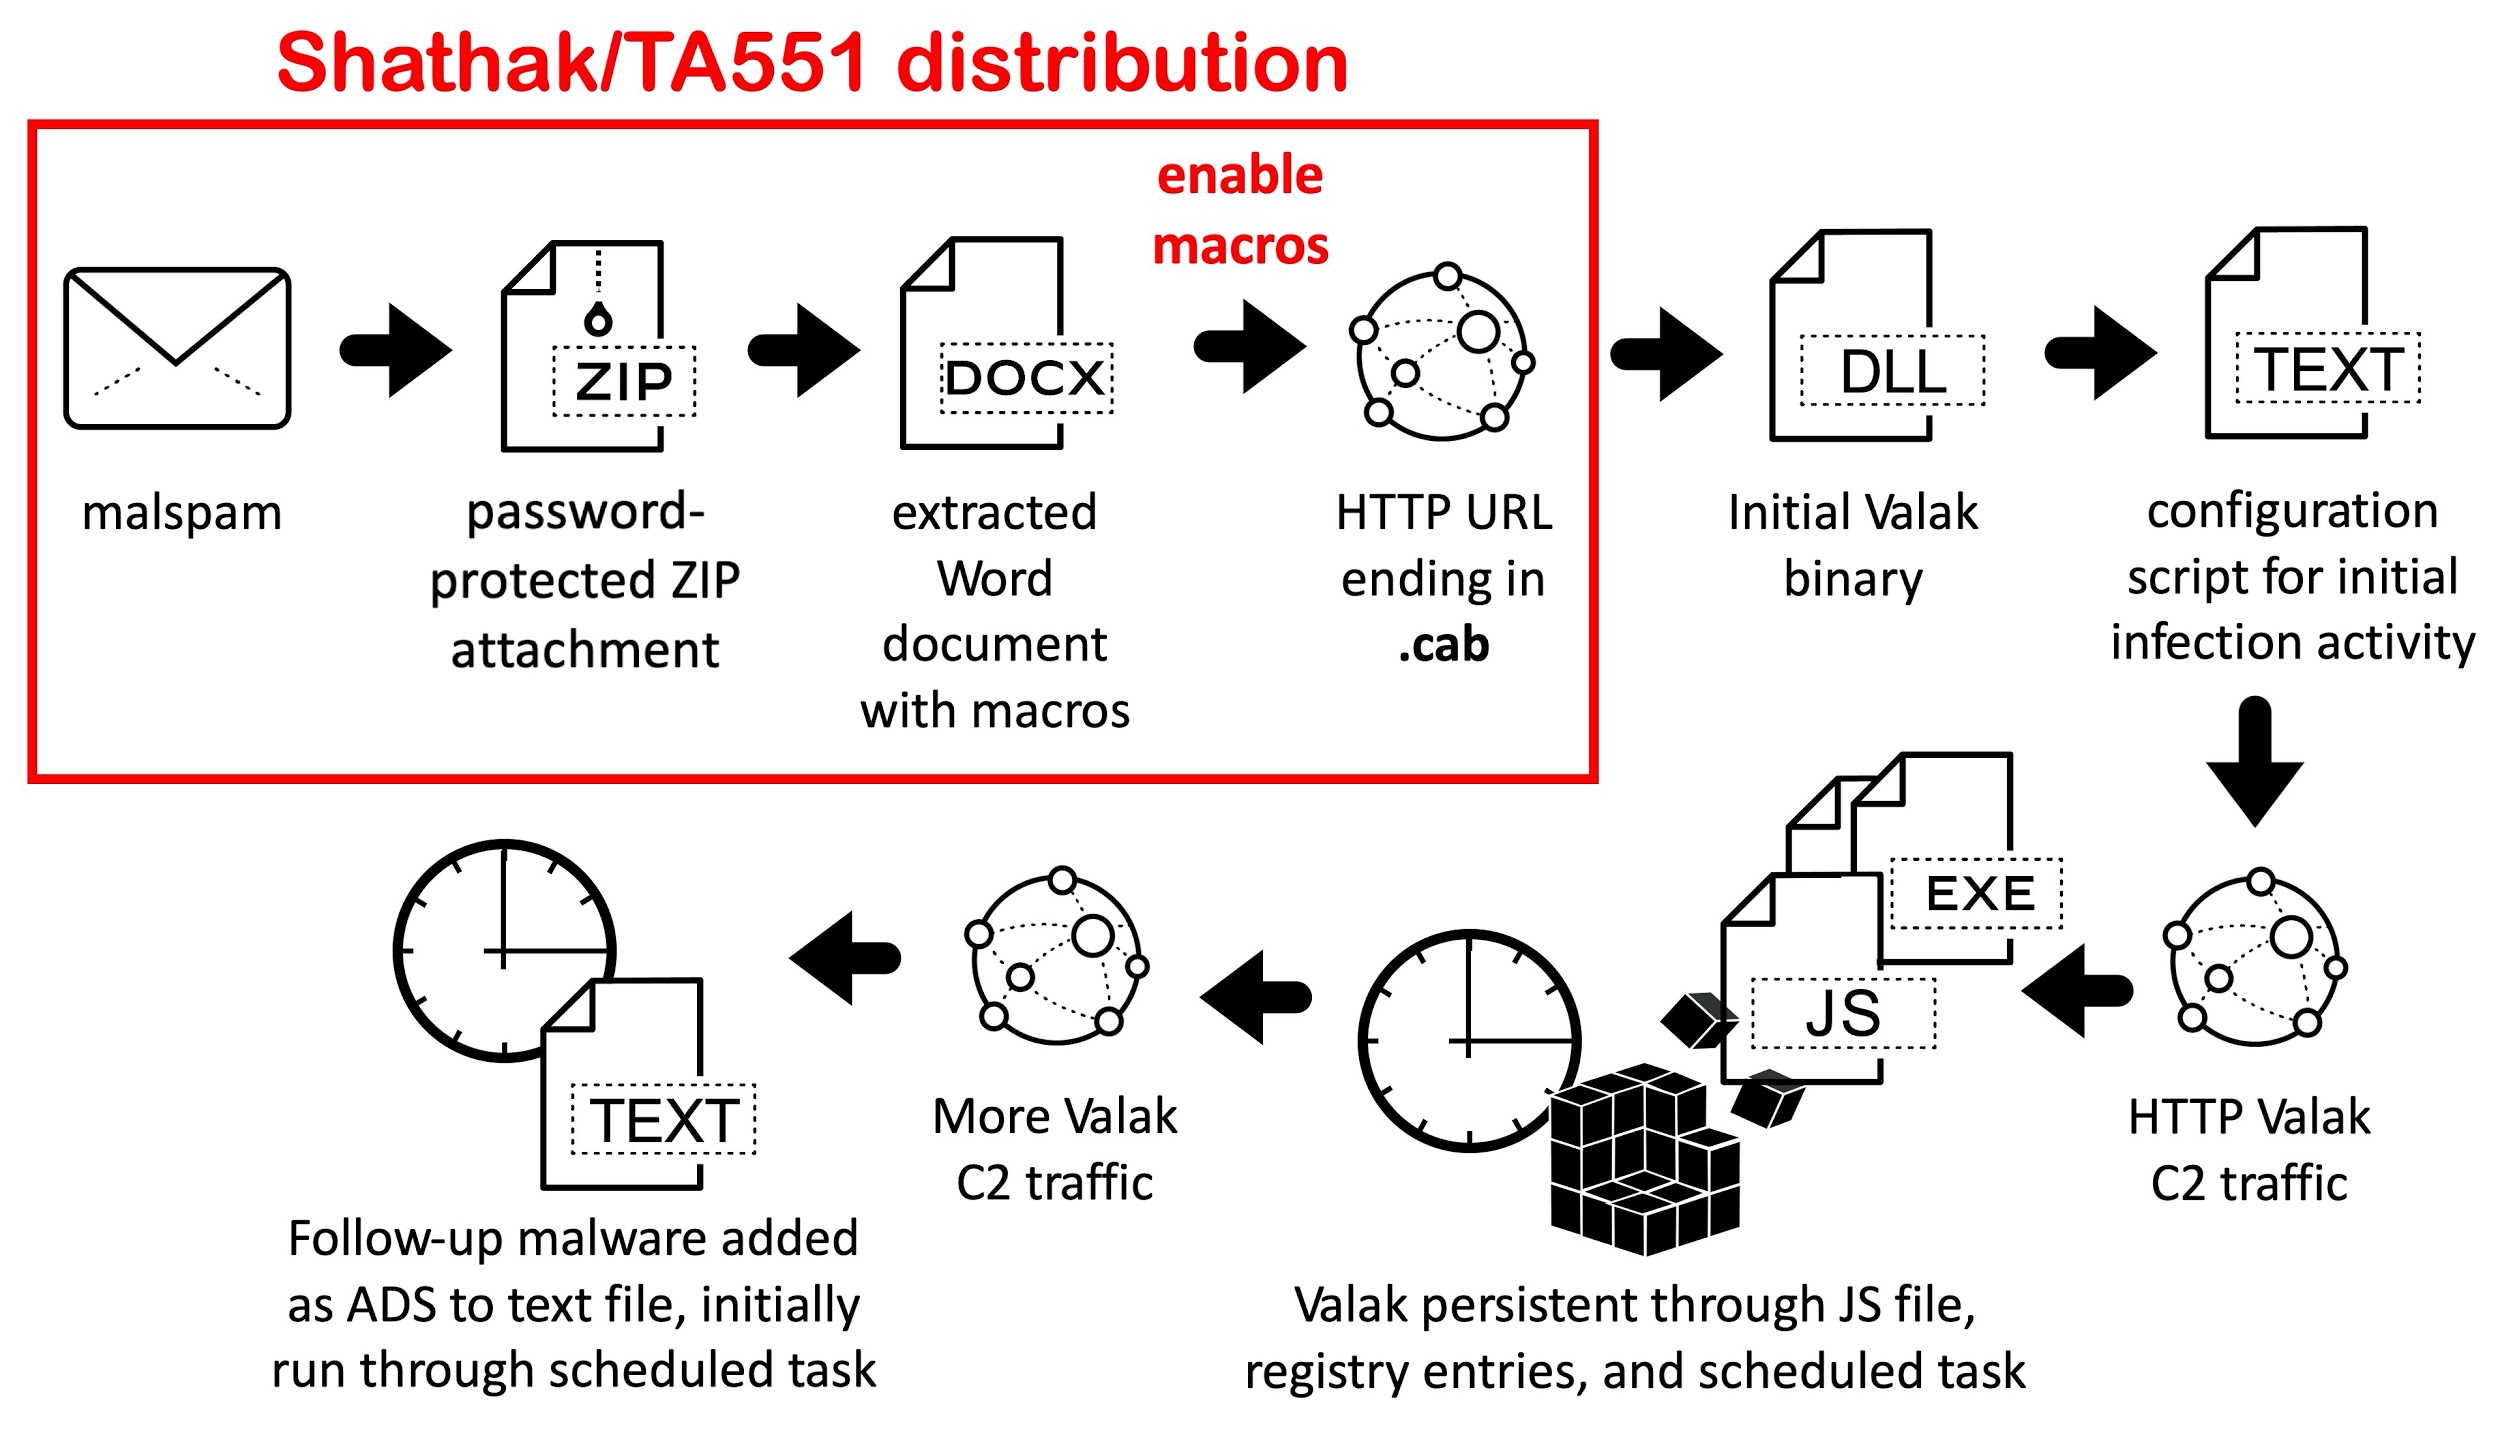 この図は、最近のValakマルウェアの活動で観察されたイベント連鎖を示しています。Shathak/TA551配布ネットワークから始まるプロセスには、マルスパム、パスワード保護されたZIP添付ファイル、この添付ファイルからのマクロ付きのWord文書の抽出、マクロの有効化、および.cabで終わるHTTP URLへの誘導が含まれます。これが、第1段階のValakバイナリのダウンロード、第1段階の感染活動用のスクリプトの設定、HTTP Valak C2トラフィック、およびJSファイル、レジストリエントリ、スケジュールされたタスクによるValakの持続性の確立へと続きます。Valak C2トラフィックが増加し、ADSとしてテキストファイルに追加されたフォローアップマルウェアが、スケジュールされたタスクによりまず実行されます。 